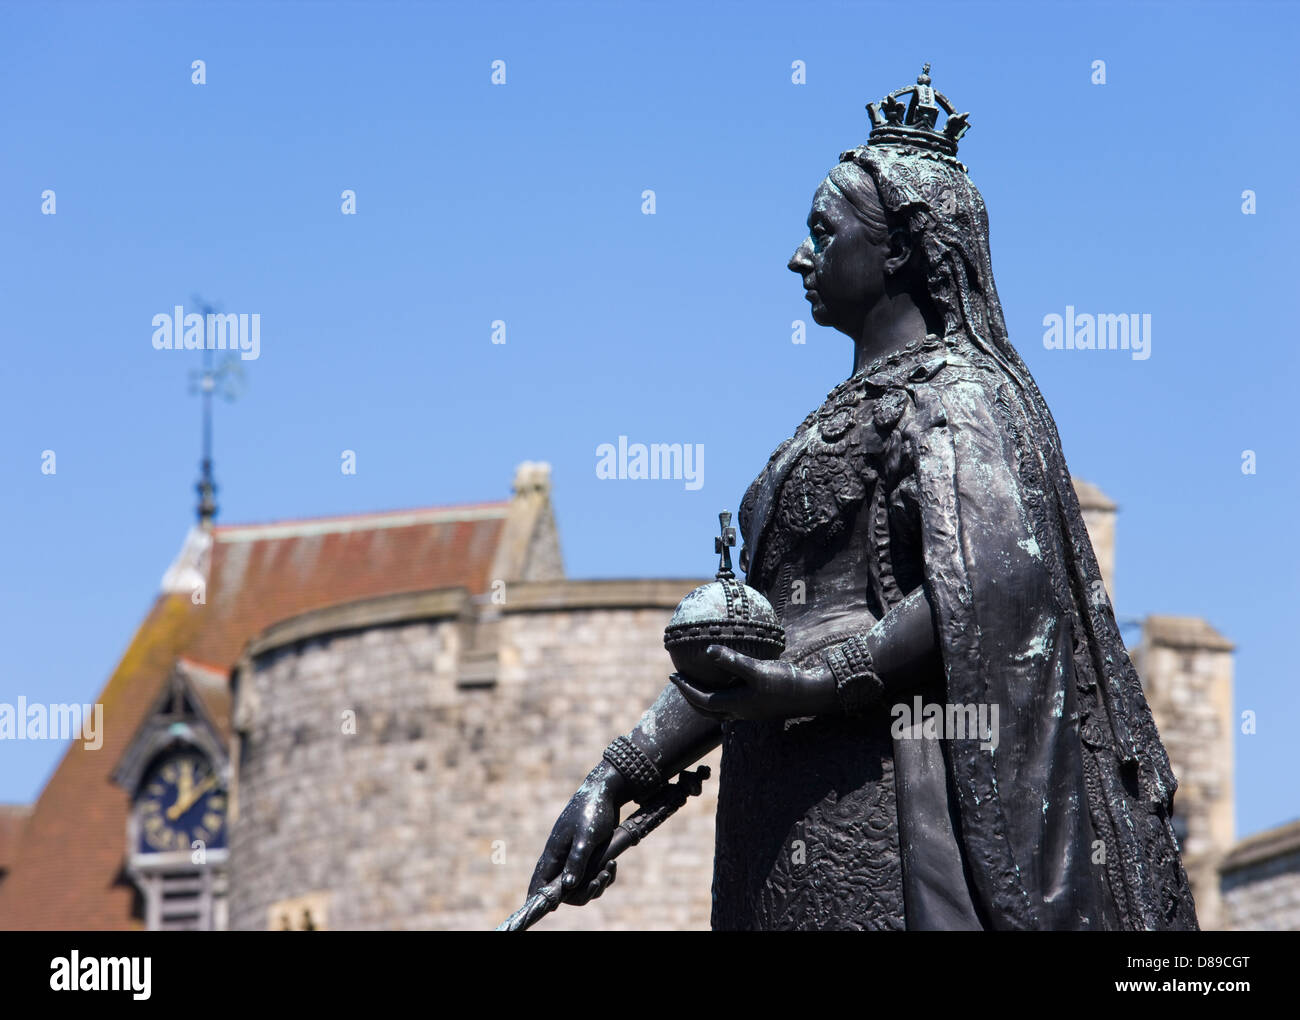 Queen Victoria statue at Windsor Castle, Berkshire, UK. Stock Photo